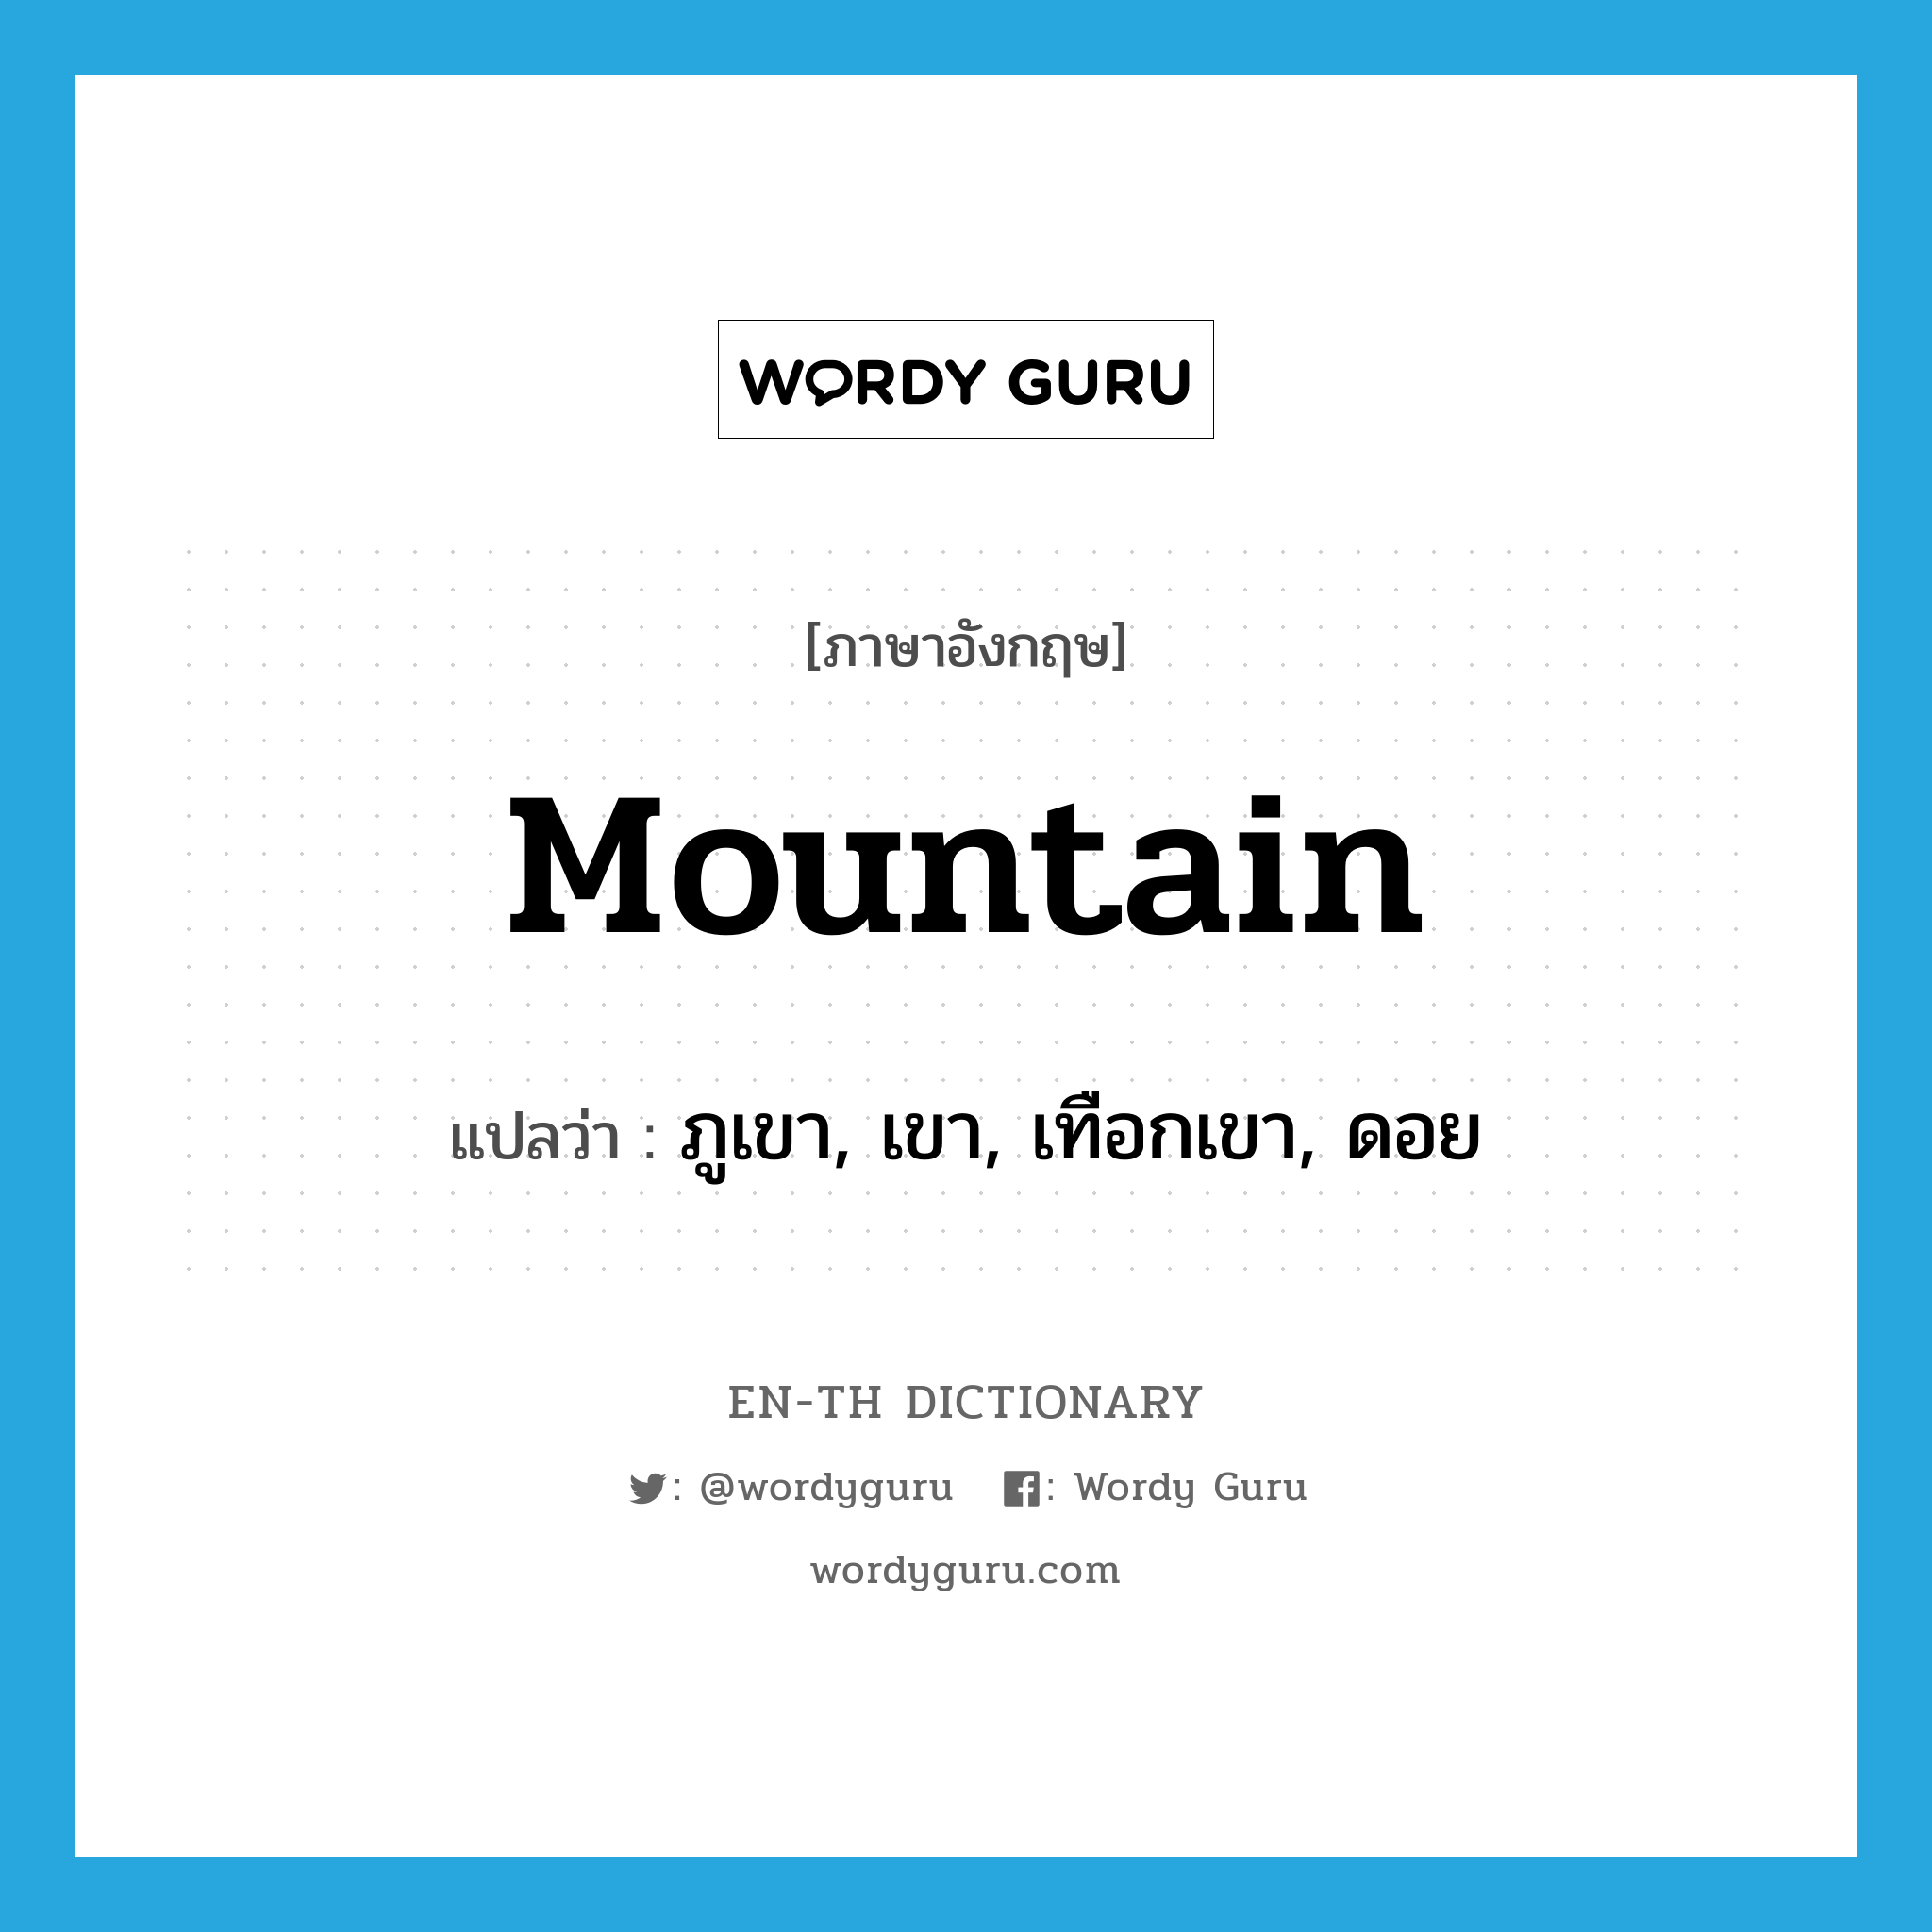 ภูเขา, เขา, เทือกเขา, ดอย ภาษาอังกฤษ?, คำศัพท์ภาษาอังกฤษ ภูเขา, เขา, เทือกเขา, ดอย แปลว่า mountain ประเภท N หมวด N